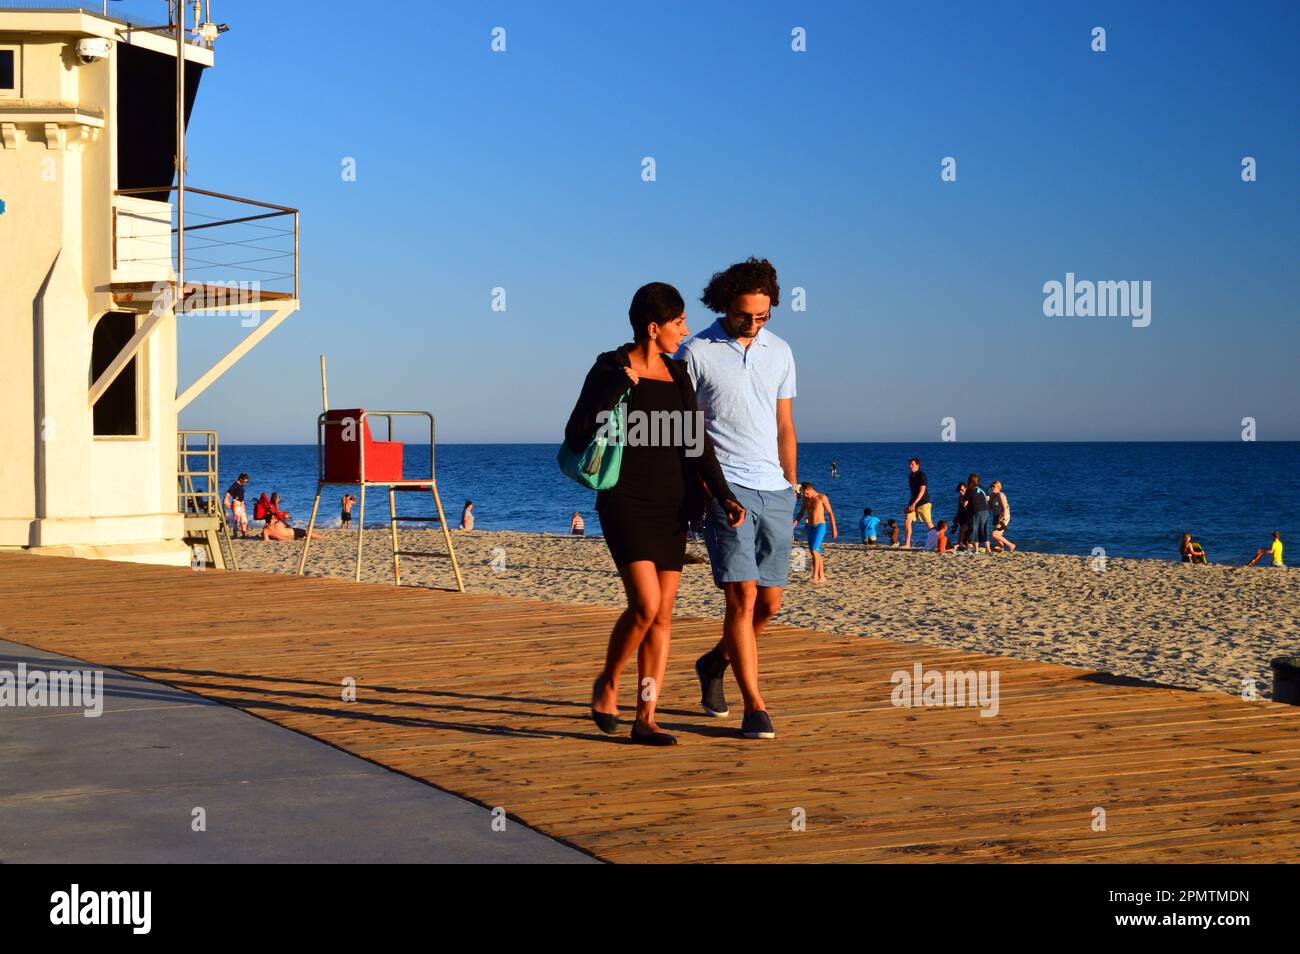 Ein junges erwachsenes Paar macht einen romantischen Spaziergang auf der Promenade von Laguna Beach, Kalifornien, und genießt einen sonnigen Sommertag an der Küste Stockfoto